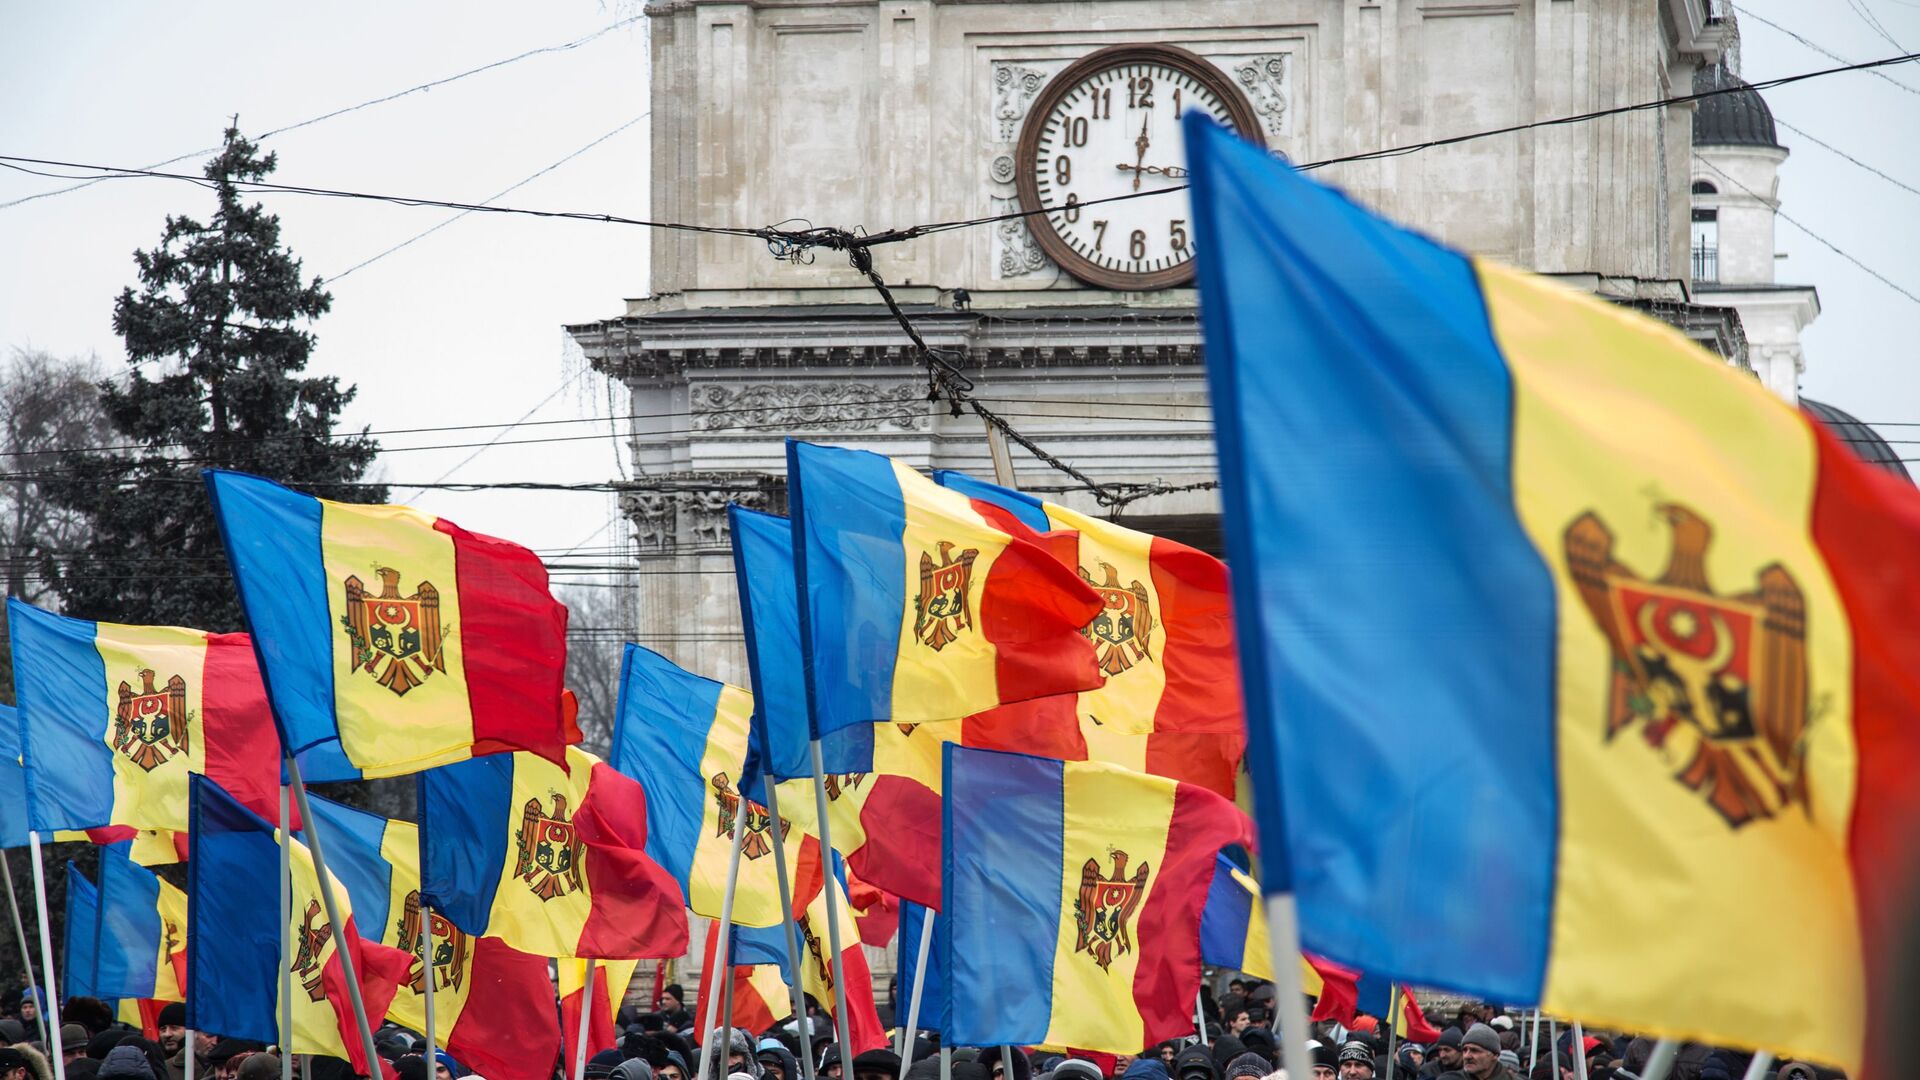 Молдавию превращают в очередной антироссийский анклав, заявил депутат